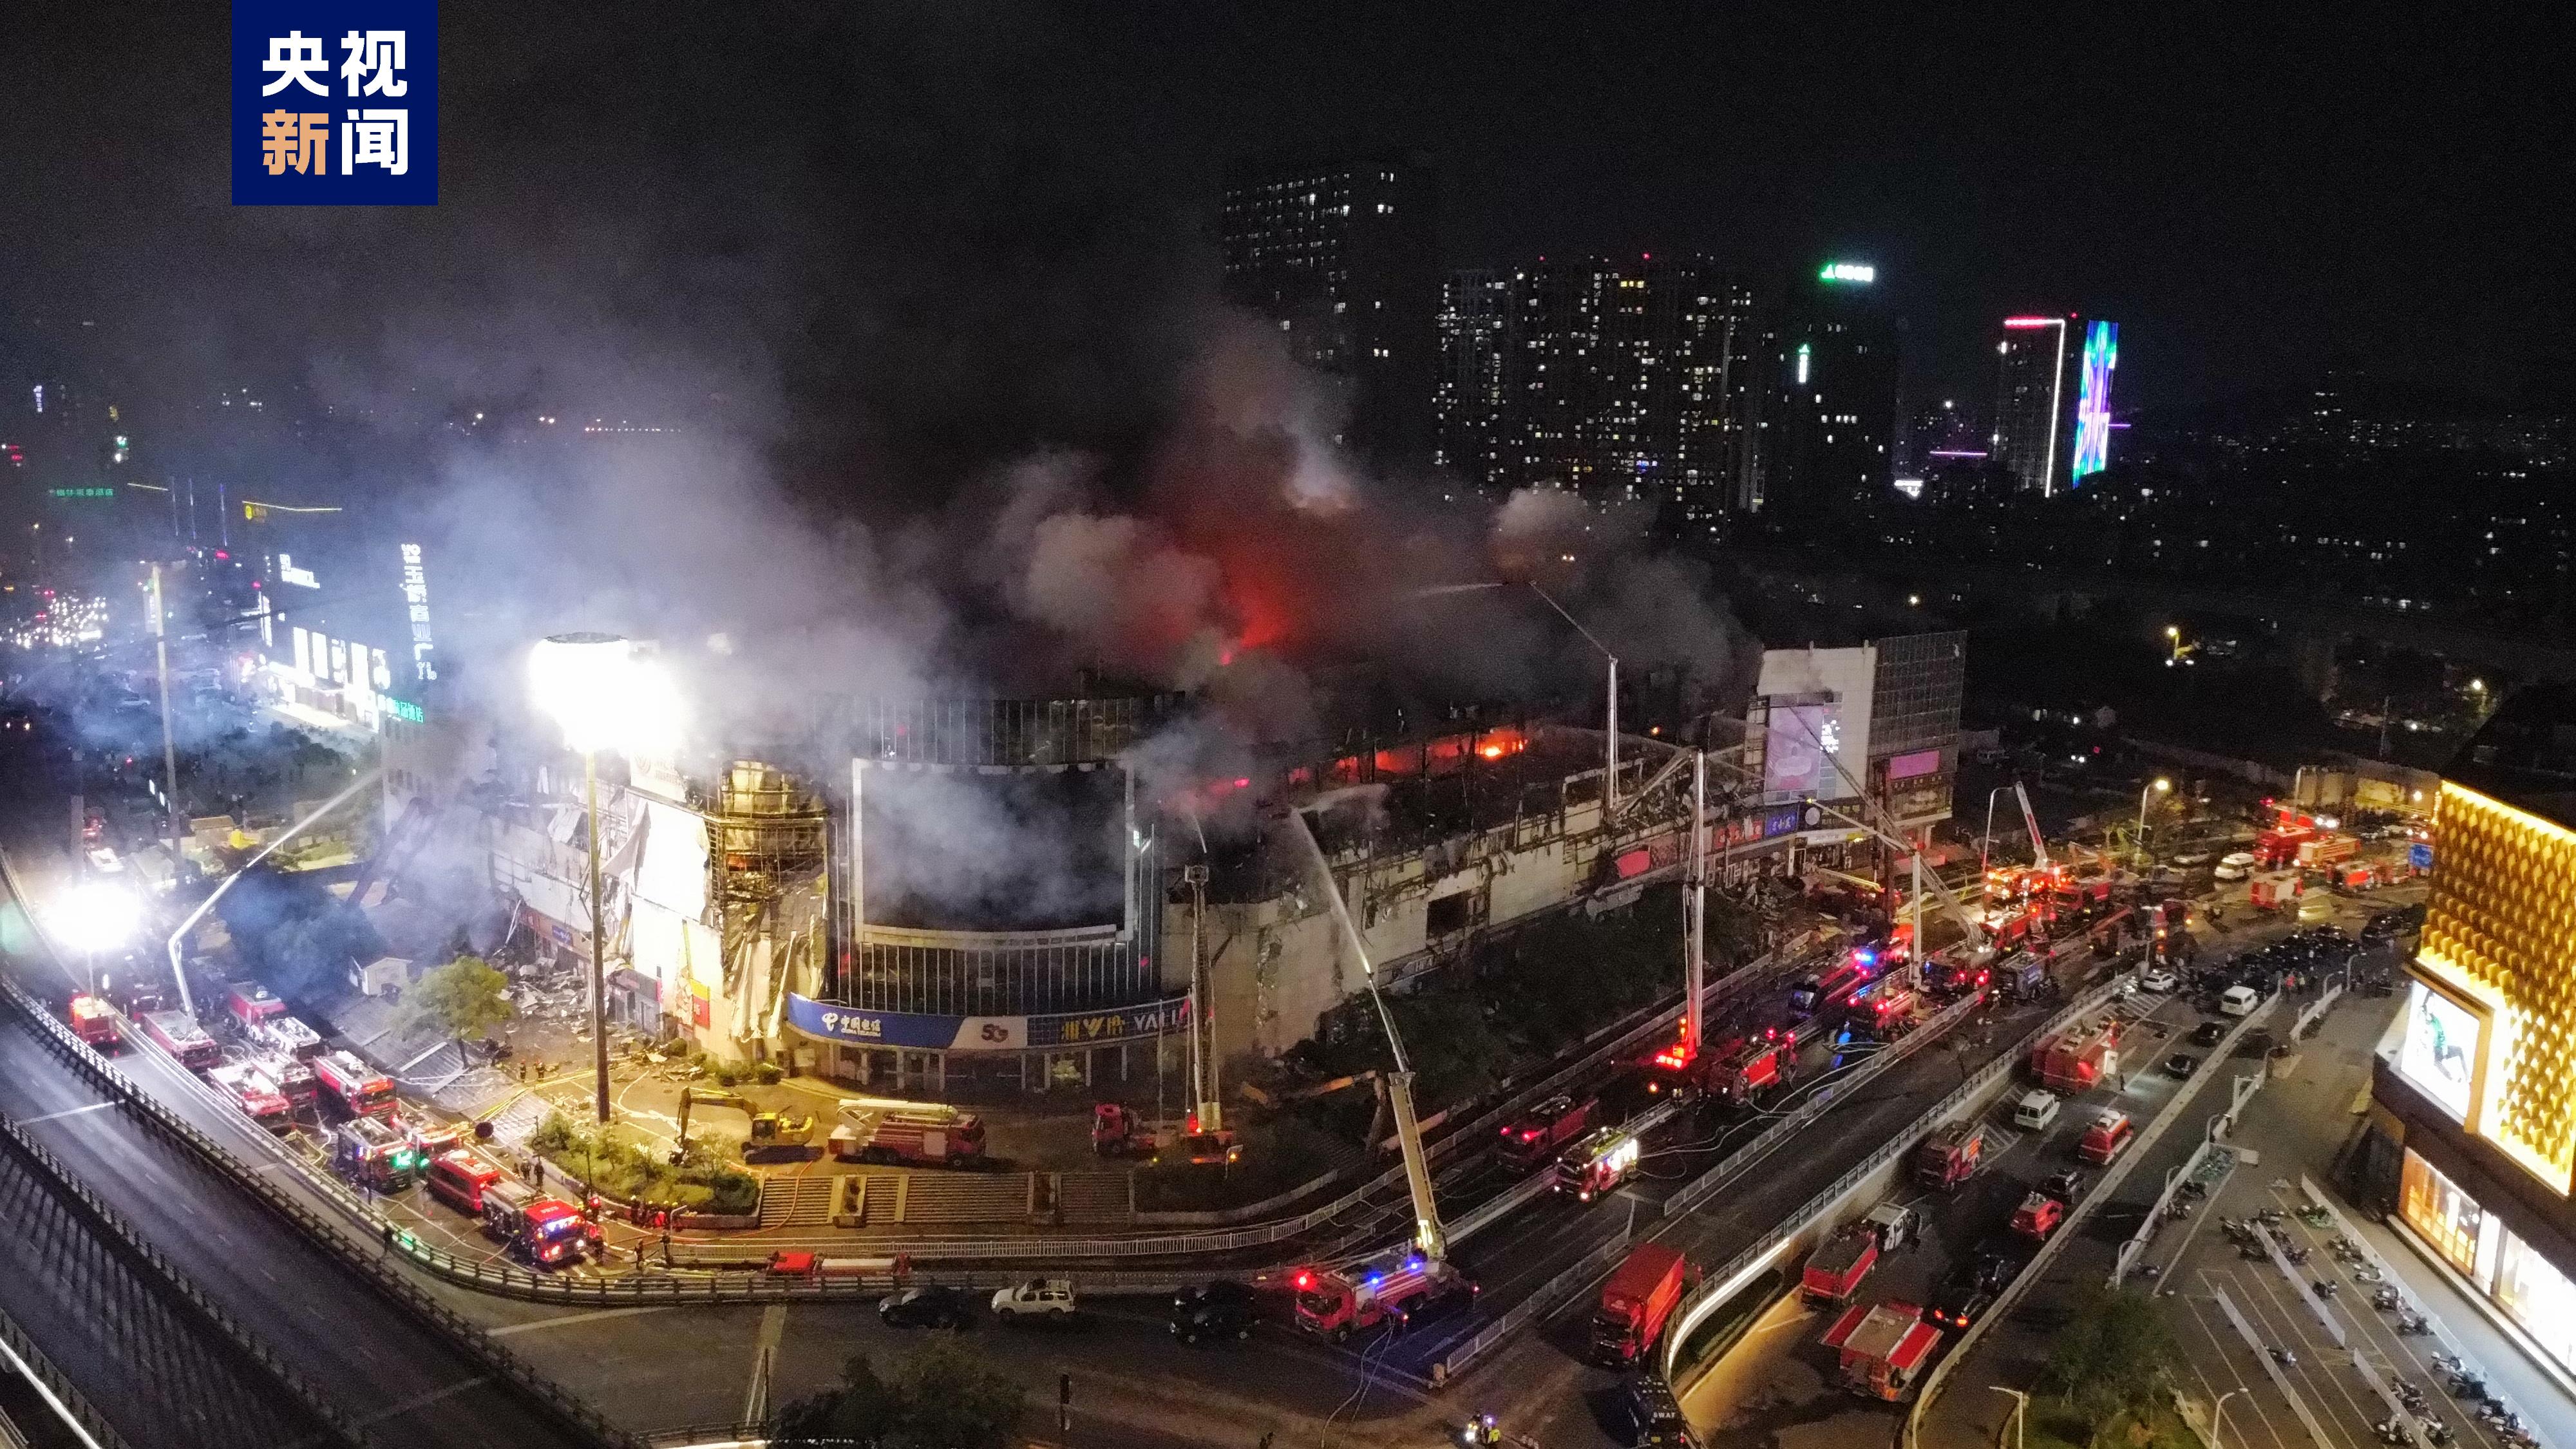 南京一商场发生火灾 目前未发现人员伤亡